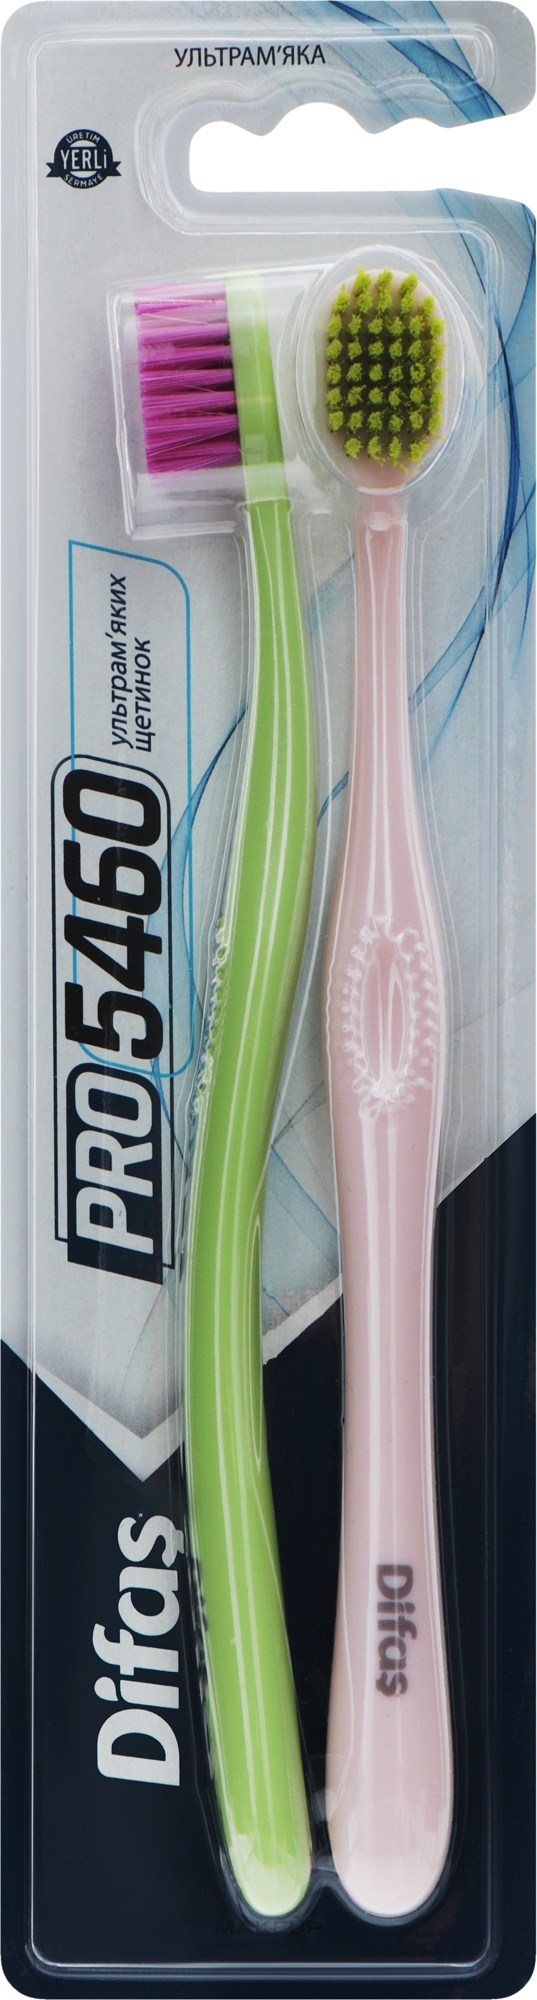 Набор зубных щеток "Ultra Soft", розовая + салатовая - Difas PRO 5460 — фото 2шт